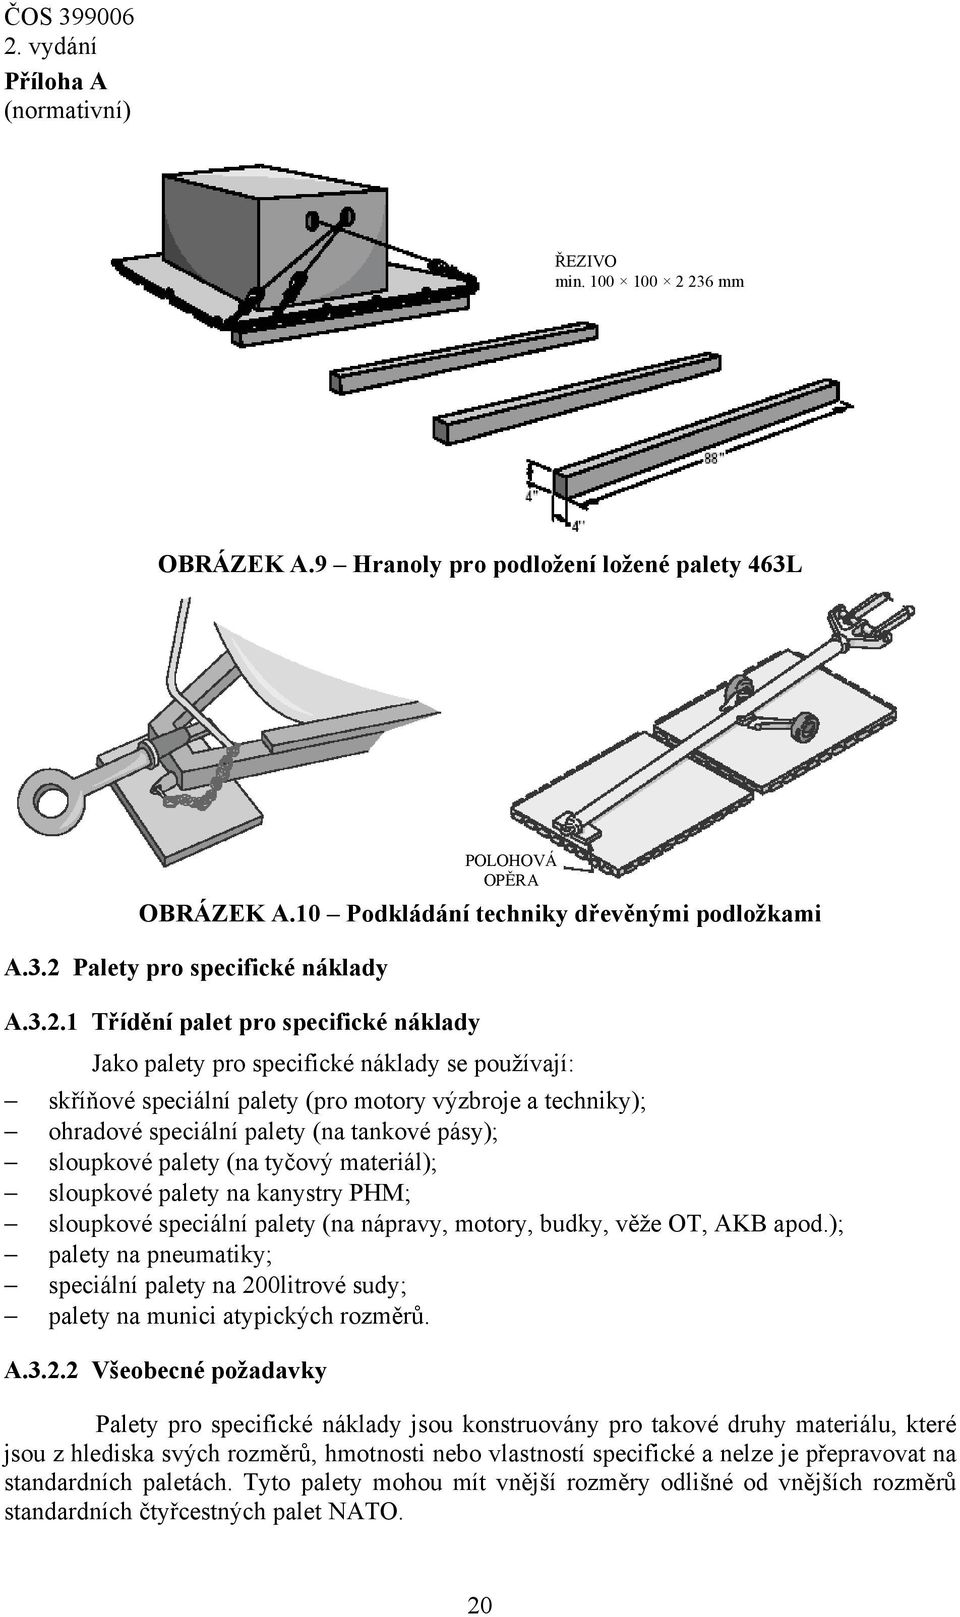 palety pro specifické náklady se používají: skříňové speciální palety (pro motory výzbroje a techniky); ohradové speciální palety (na tankové pásy); sloupkové palety (na tyčový materiál); sloupkové